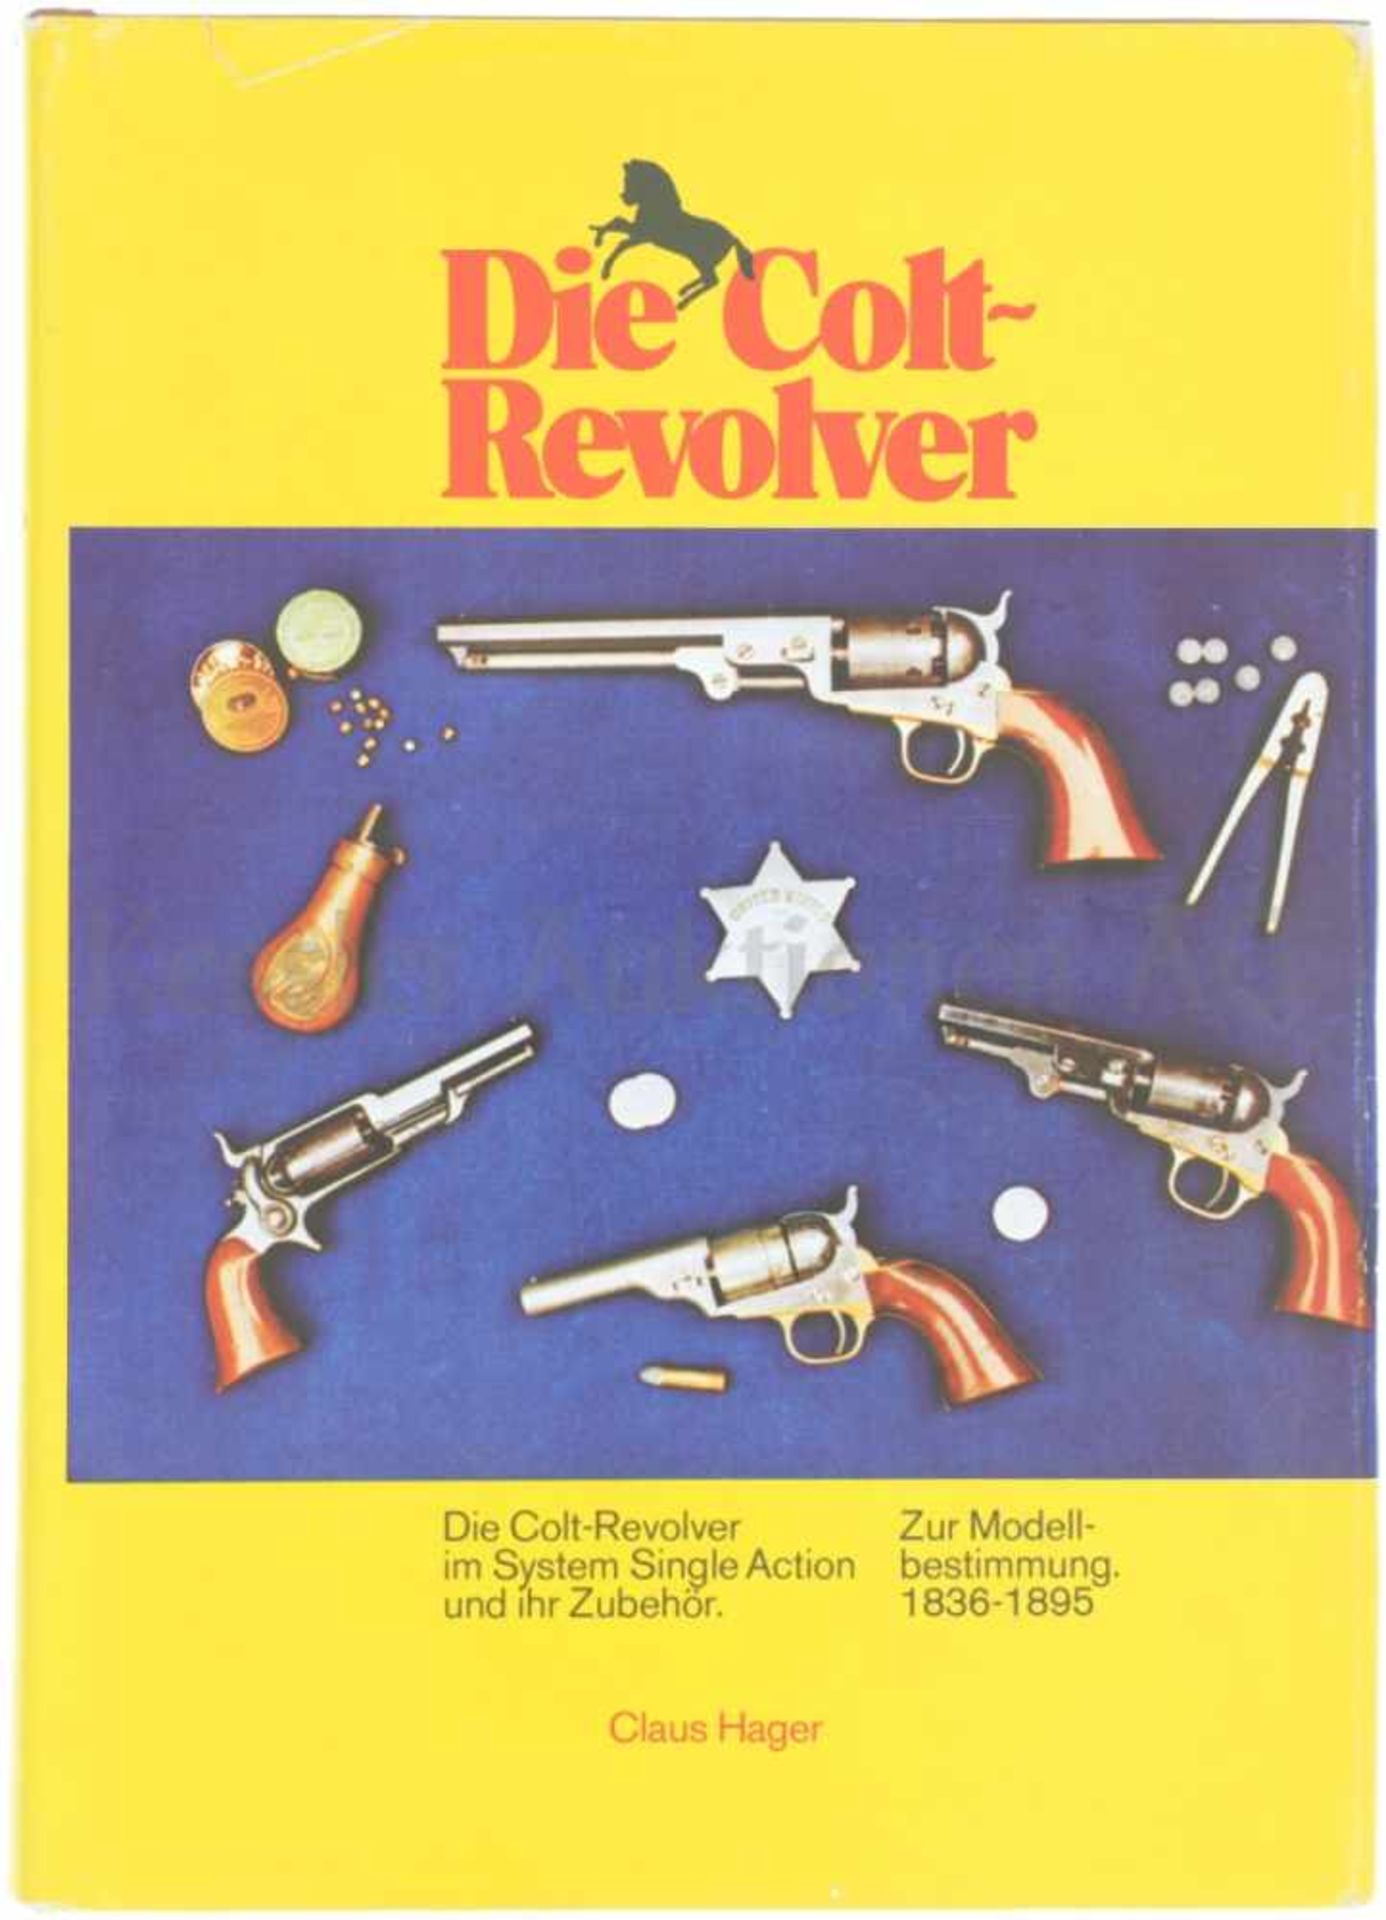 Die Colt-Revolver System Single Action und ihr Zubehör, zur Modellbestimmung, 1836-1895. Autor Claus